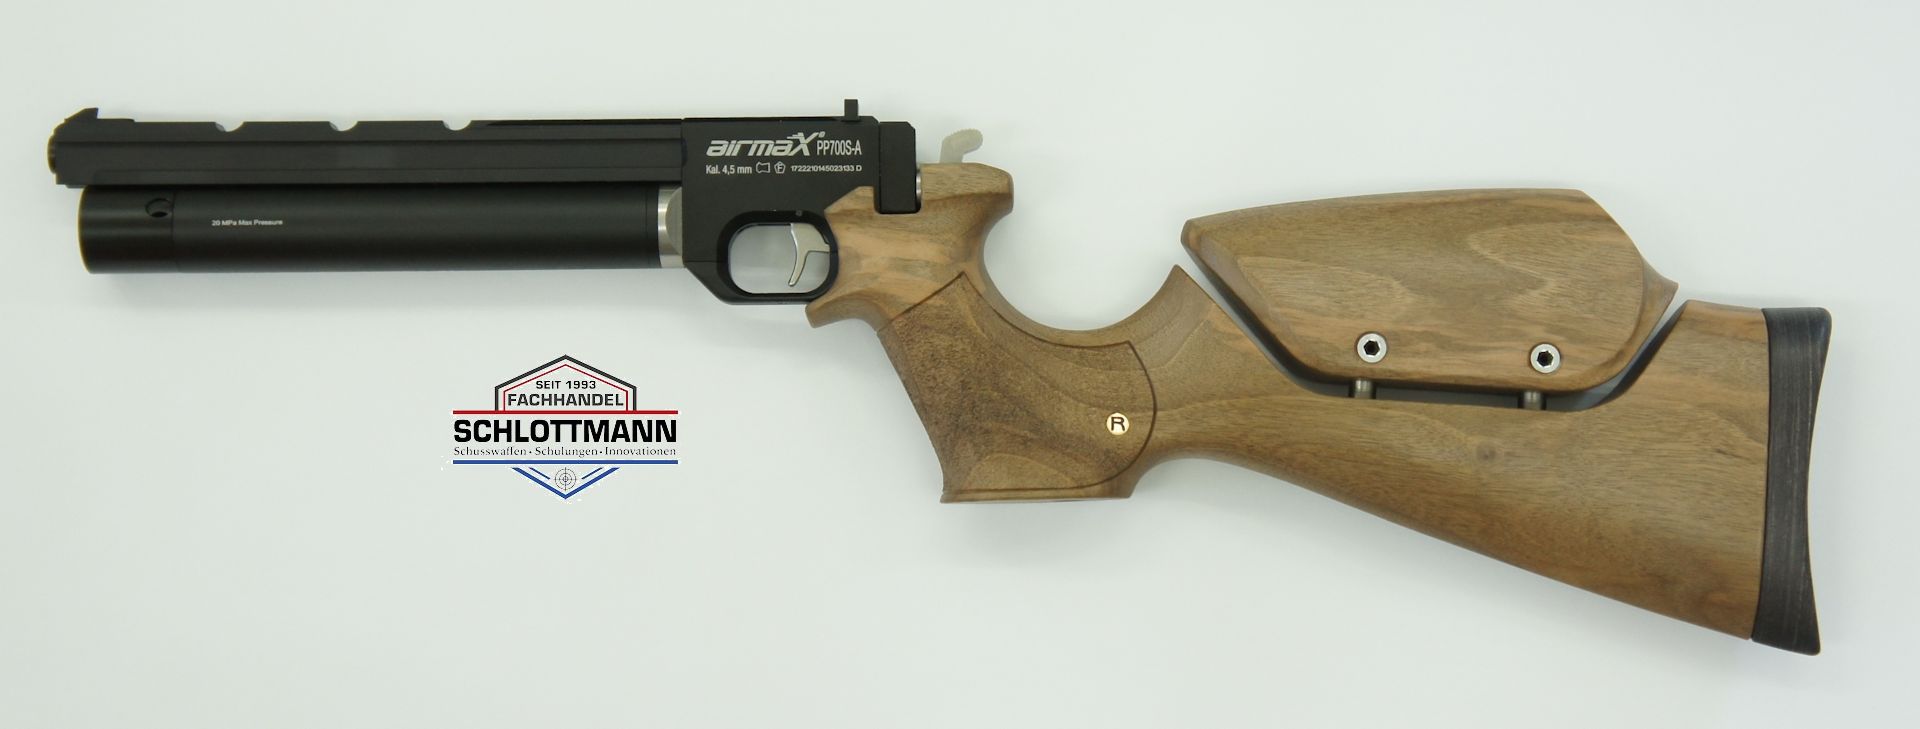 Gerne können Sie den Pistolenkarabiner auf Basis der Luftpistole airmaX PP700S-A mit Schaft aus Nussbaumholz und mit verstellbarer Schaftbacke